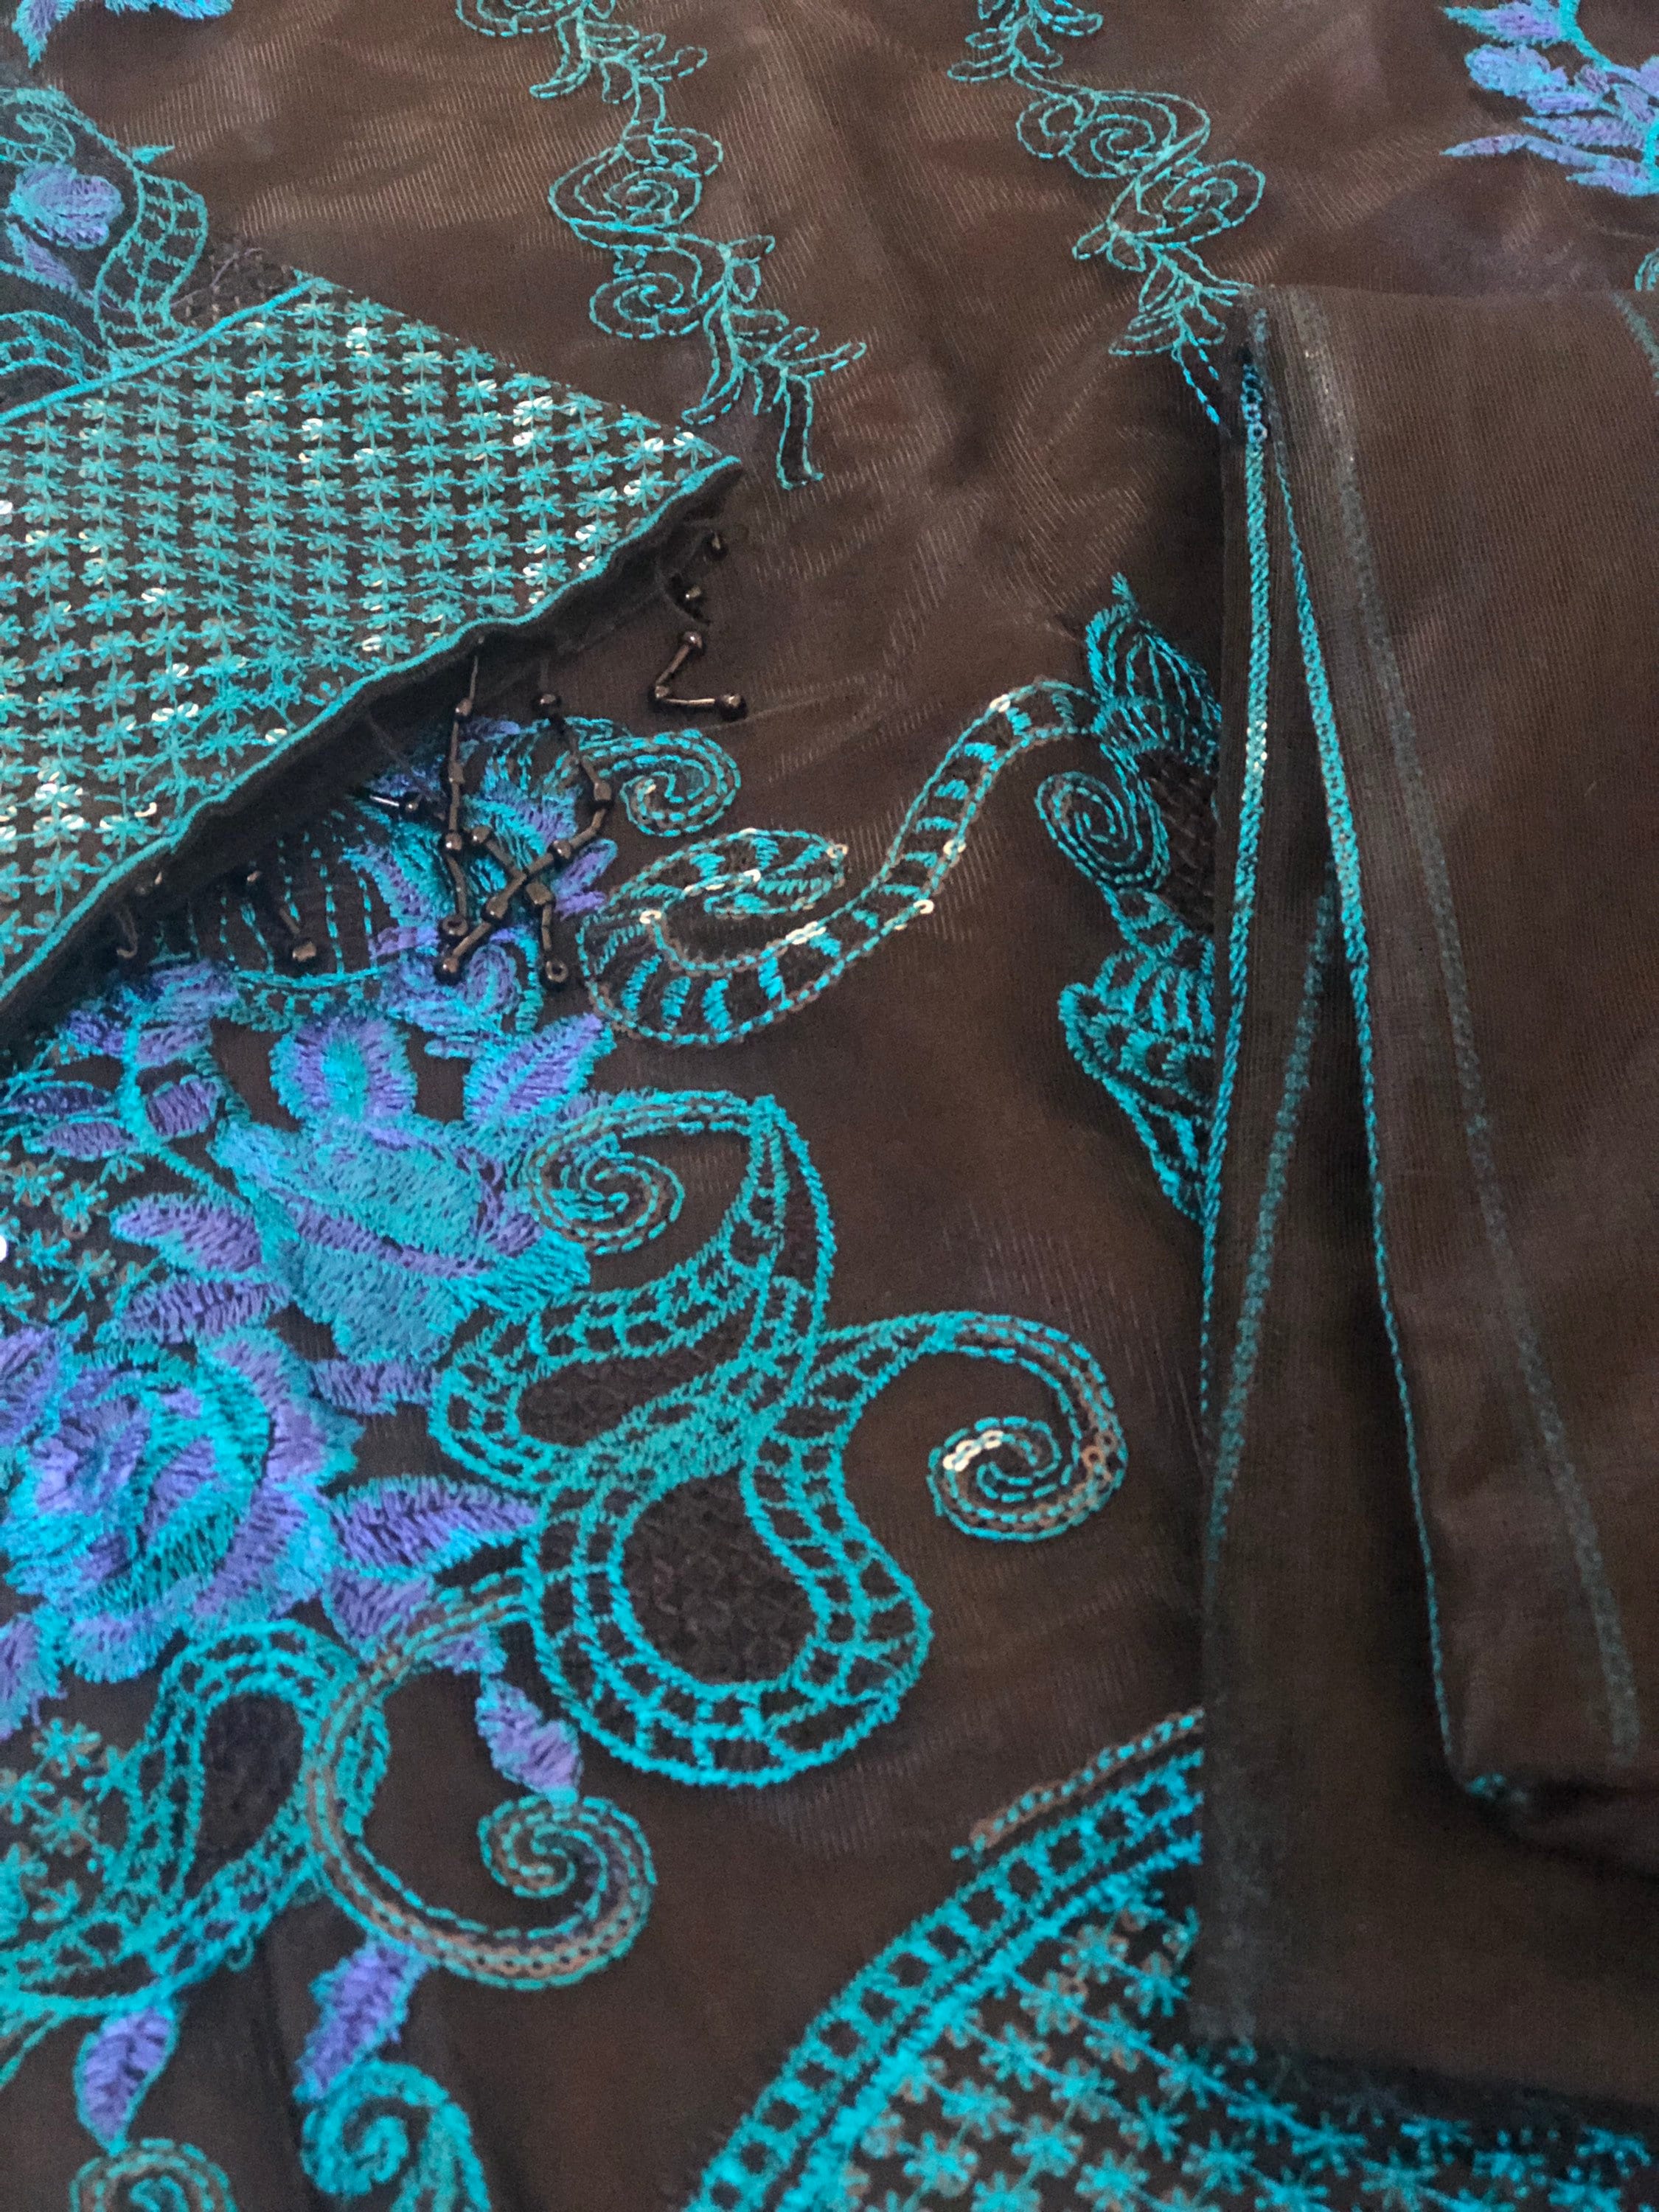 Readymade Indian Dress Pakistani Salwar Kameez Clothing Tunic | Etsy UK